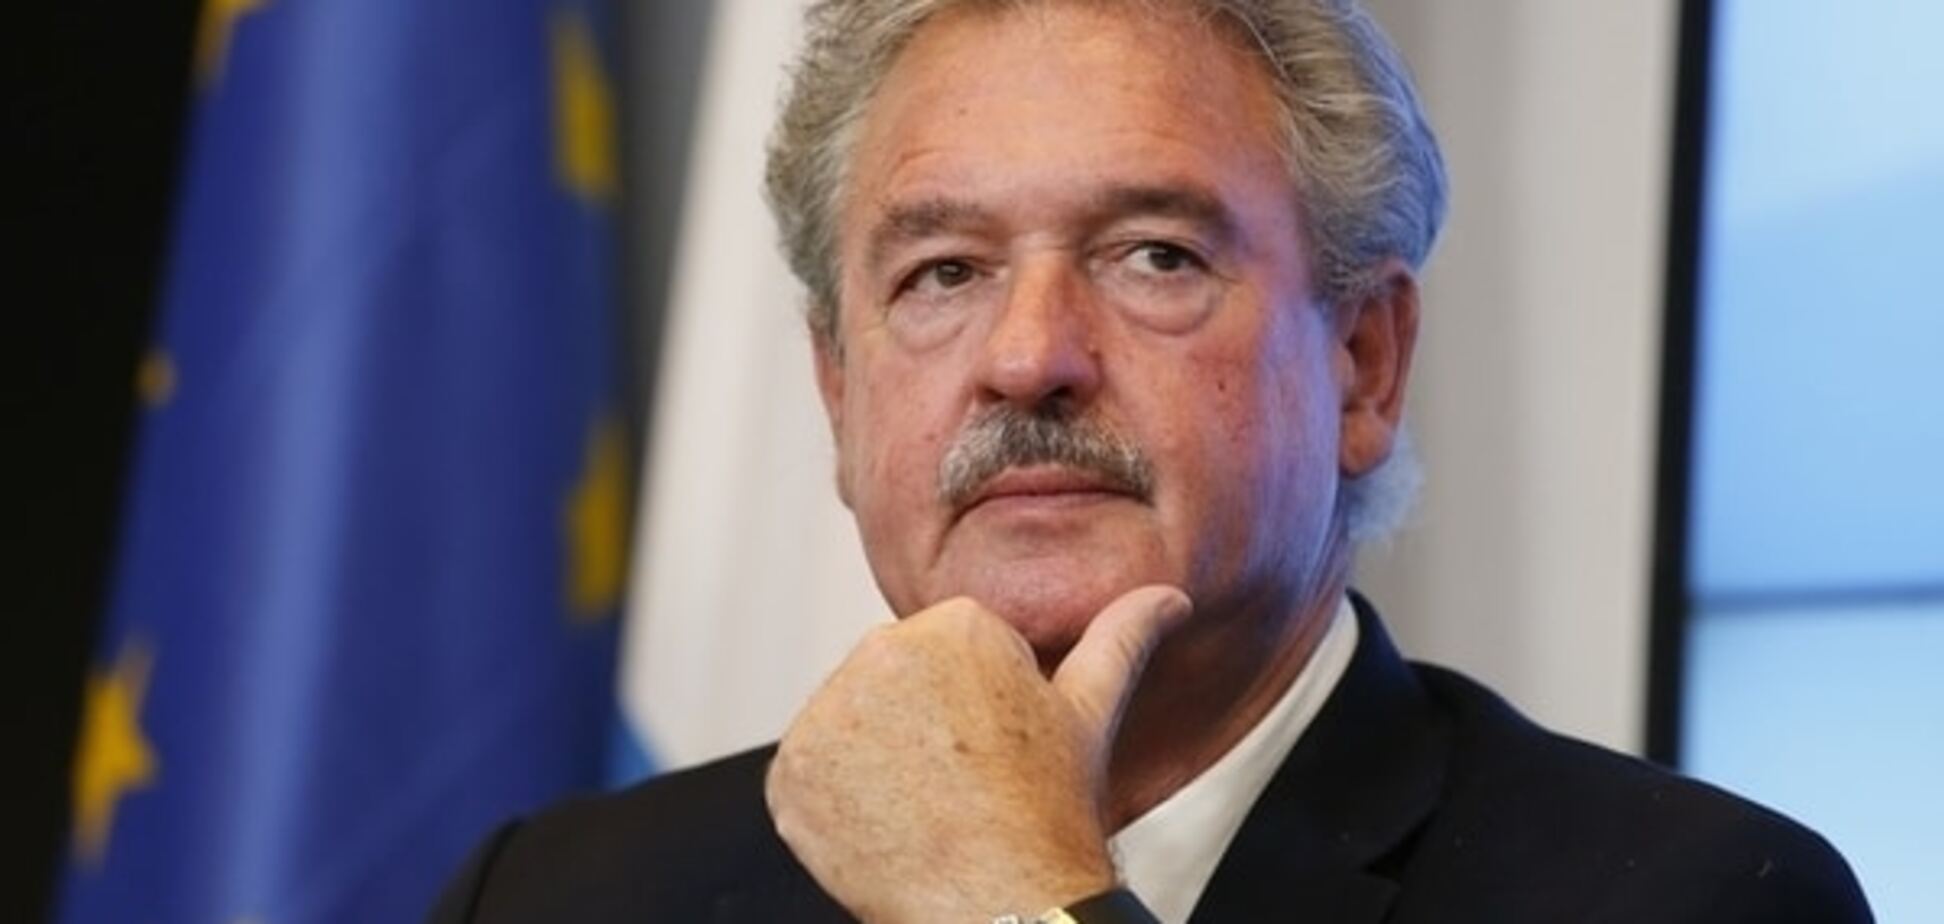 Евросоюз развалится в ближайшие несколько месяцев - глава МИД Люксембурга